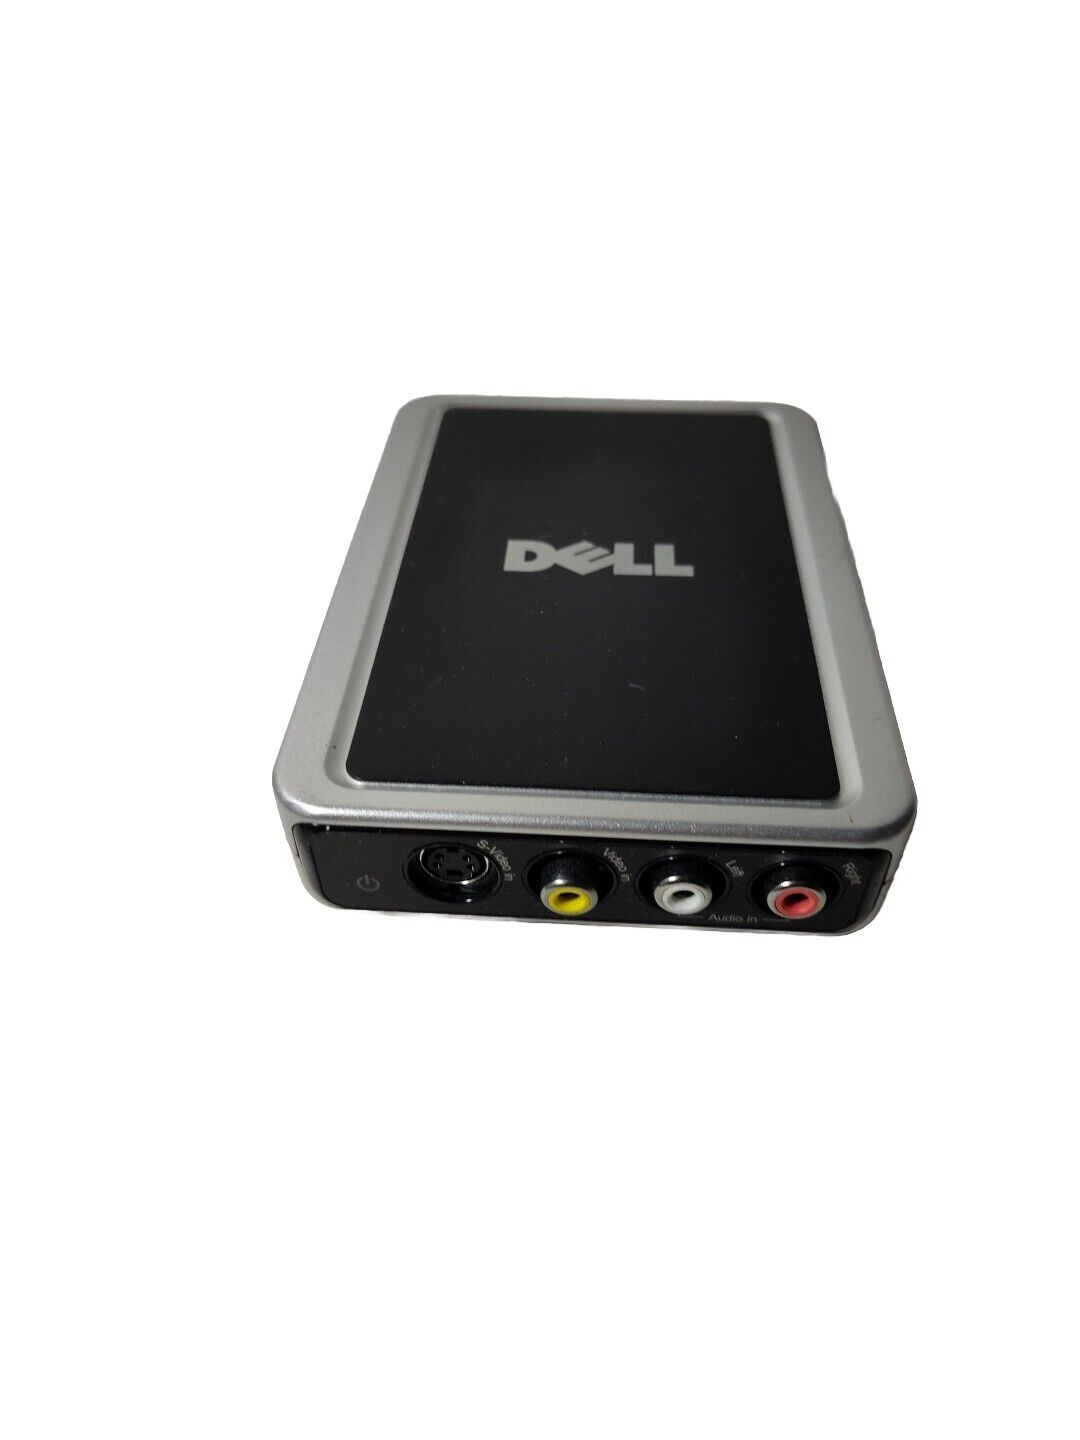 Dell Angel USB TV Tuner Model X9844